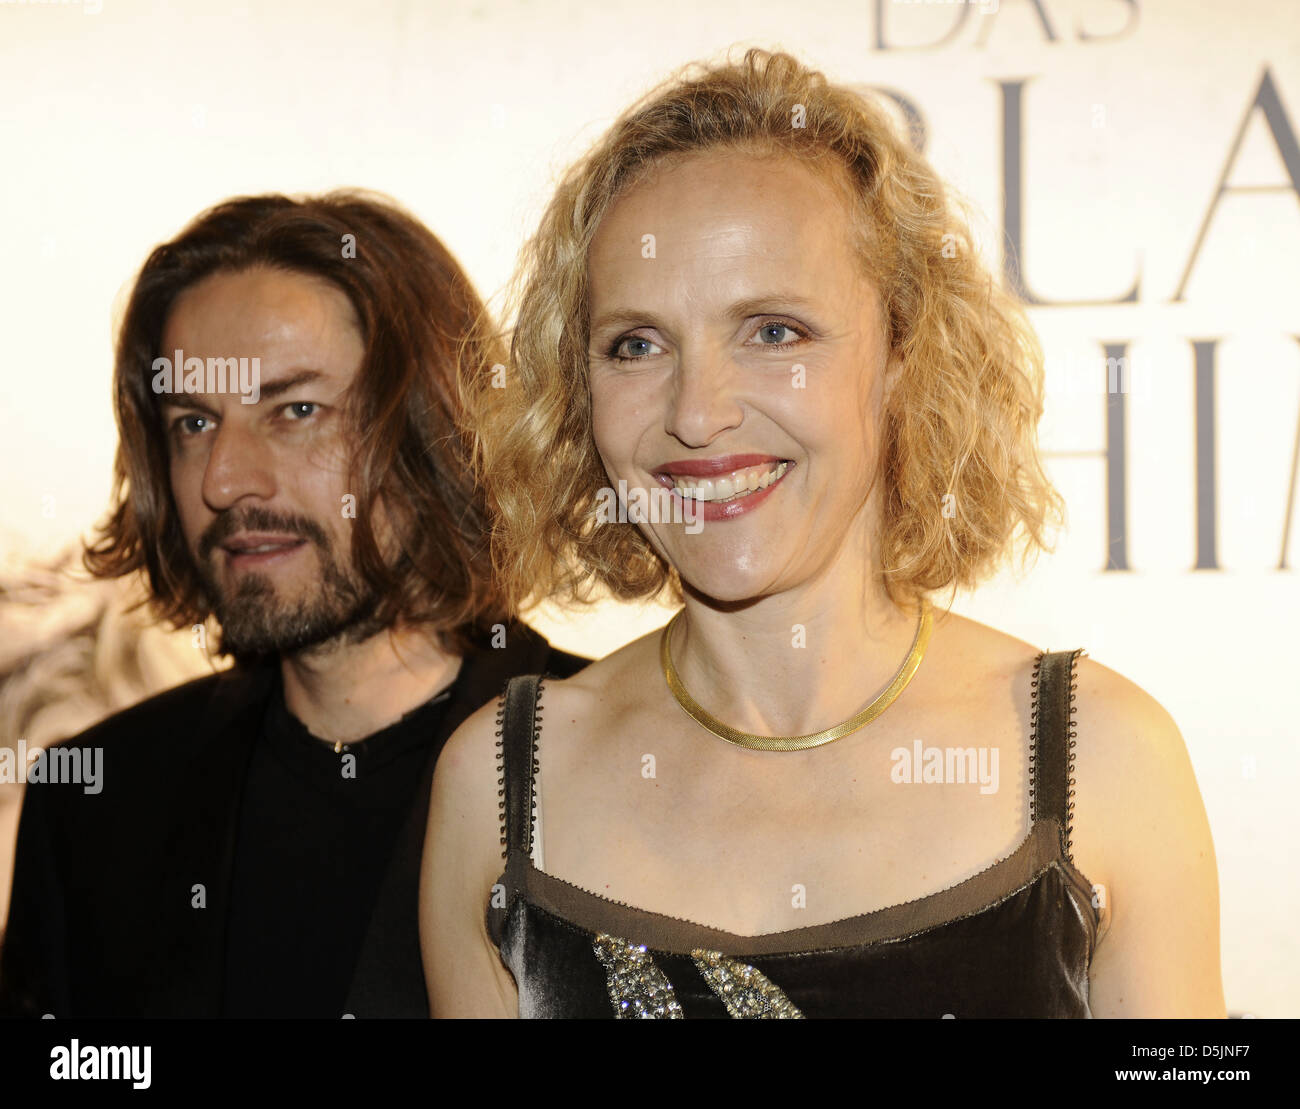 Hans Steinbichler und Juliane Koehler bei der Premiere von "Das Blaue Vom Himmel" im Arri Kino Kino. München, Deutschland- Stockfoto